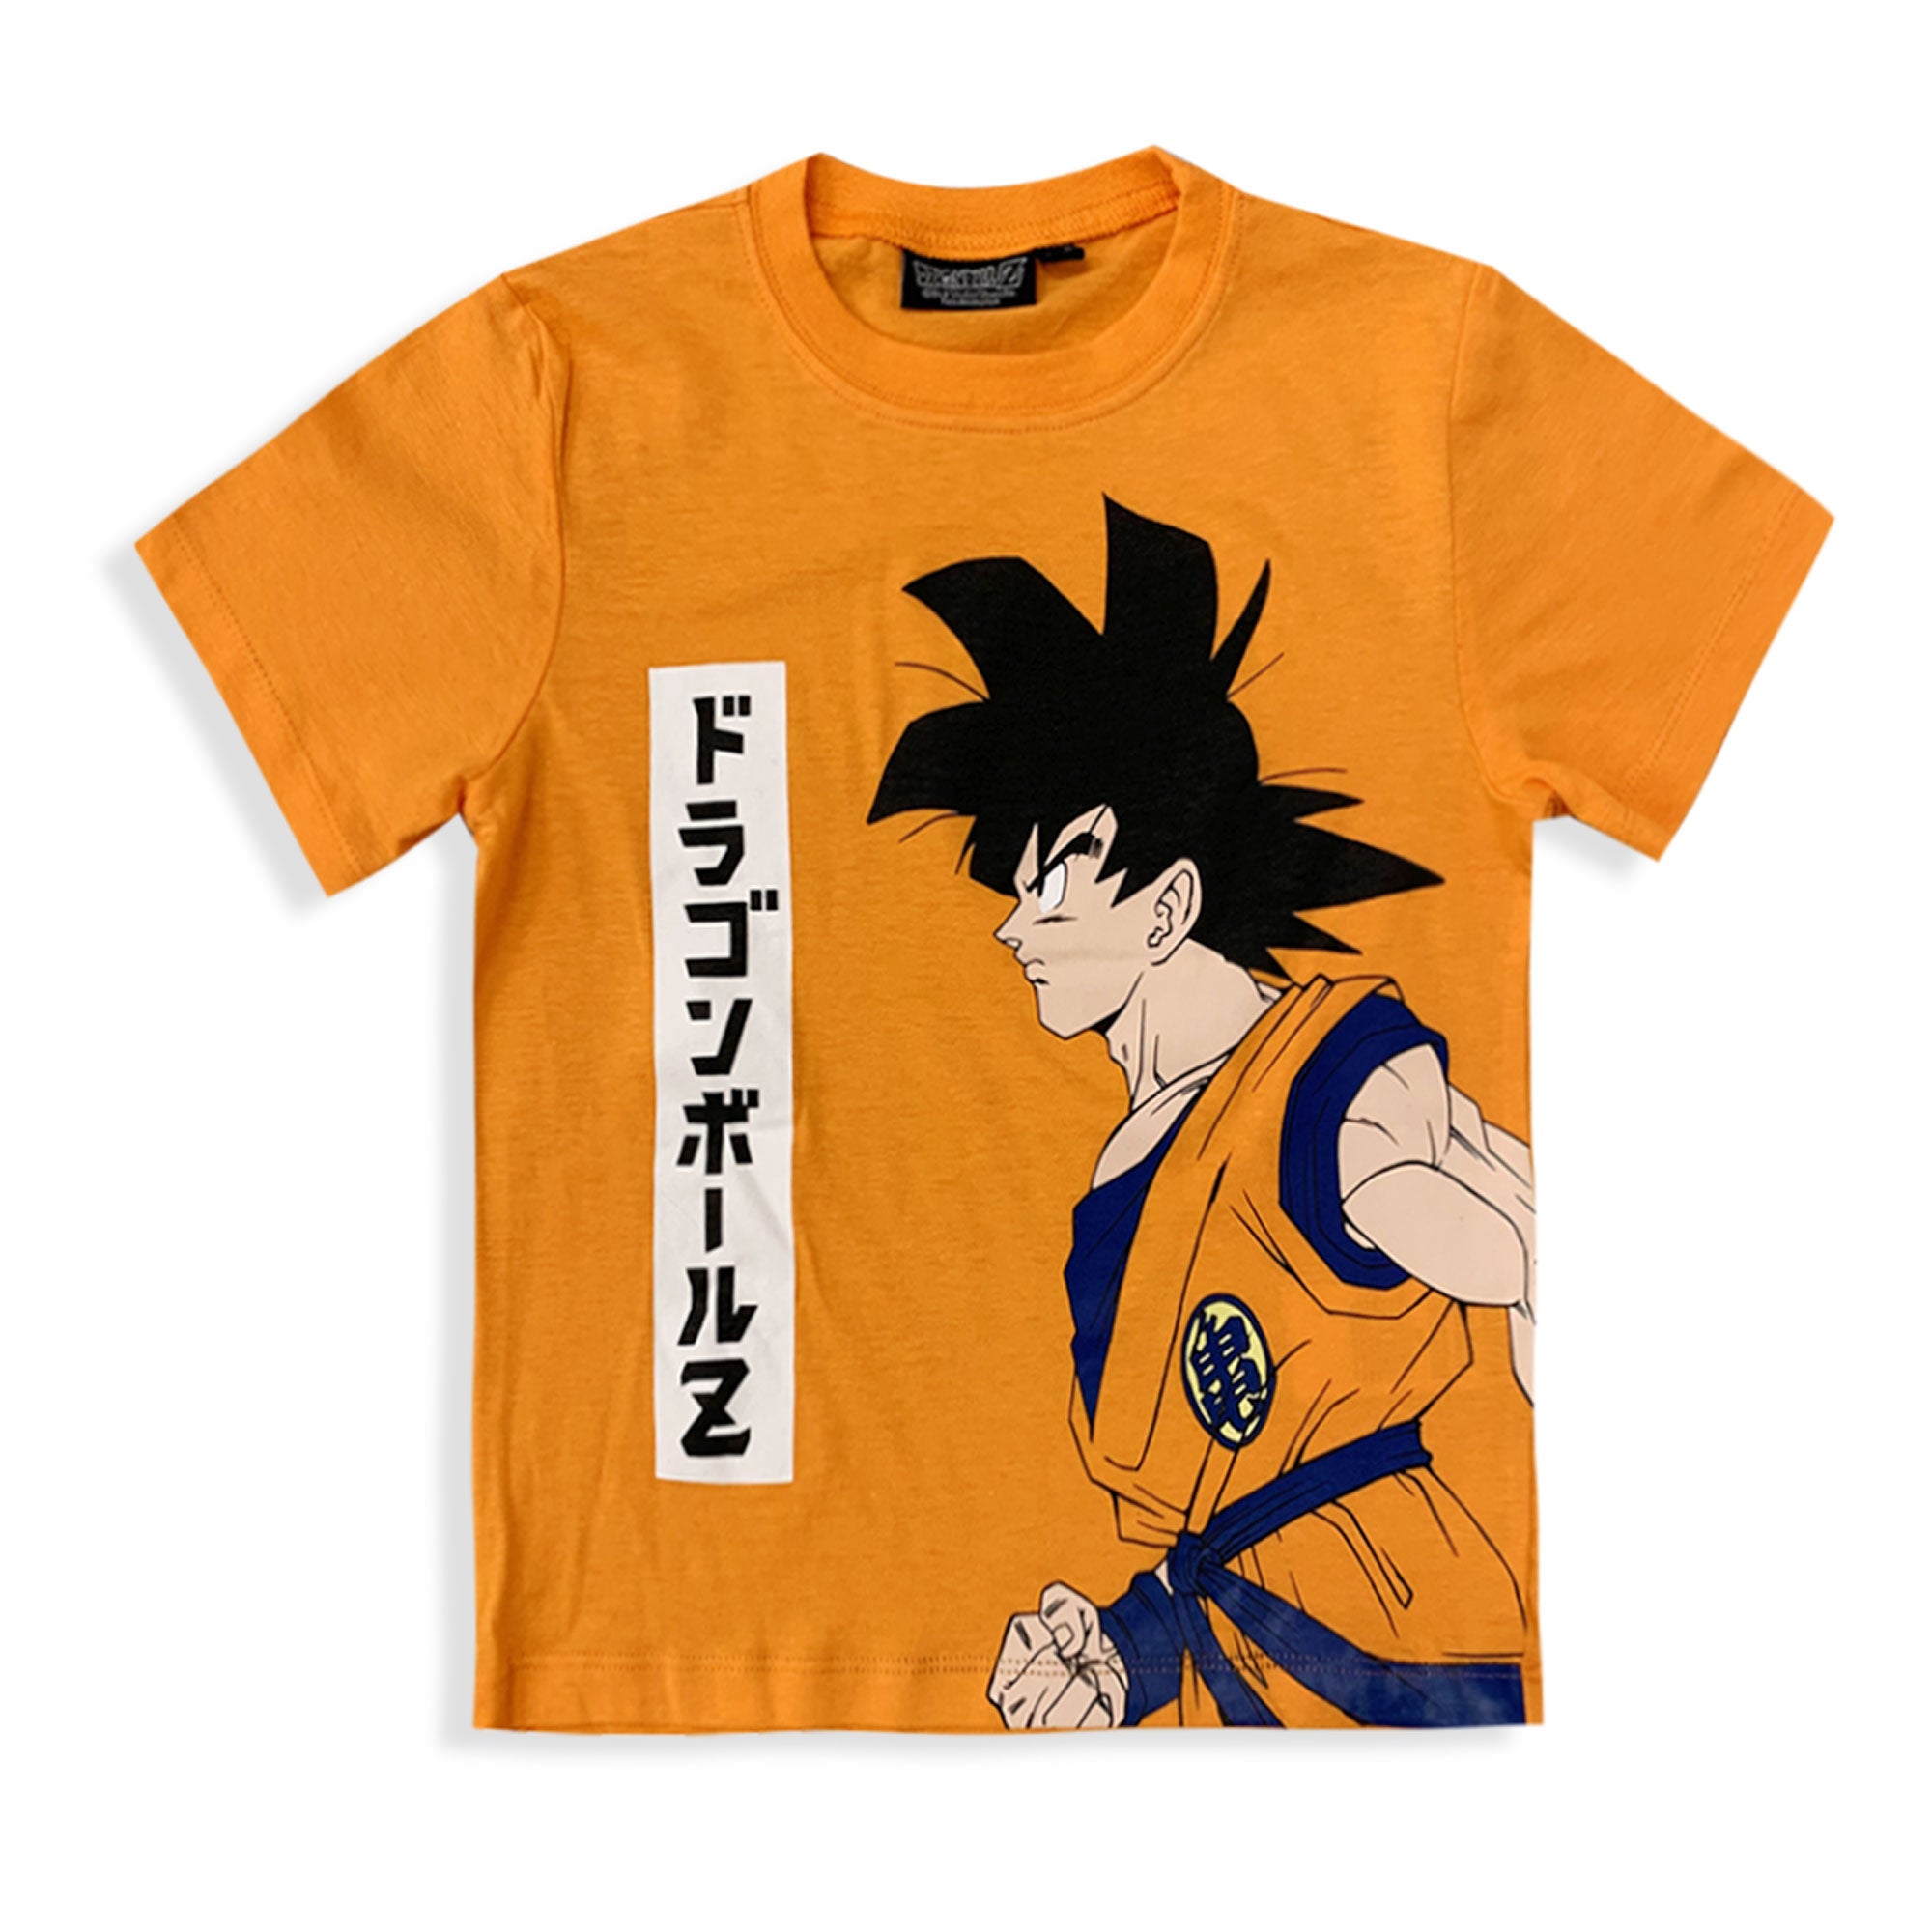 Pigiama bambino Dragon Ball Z Goku t-shirt e pantalone in cotone stampato 6030